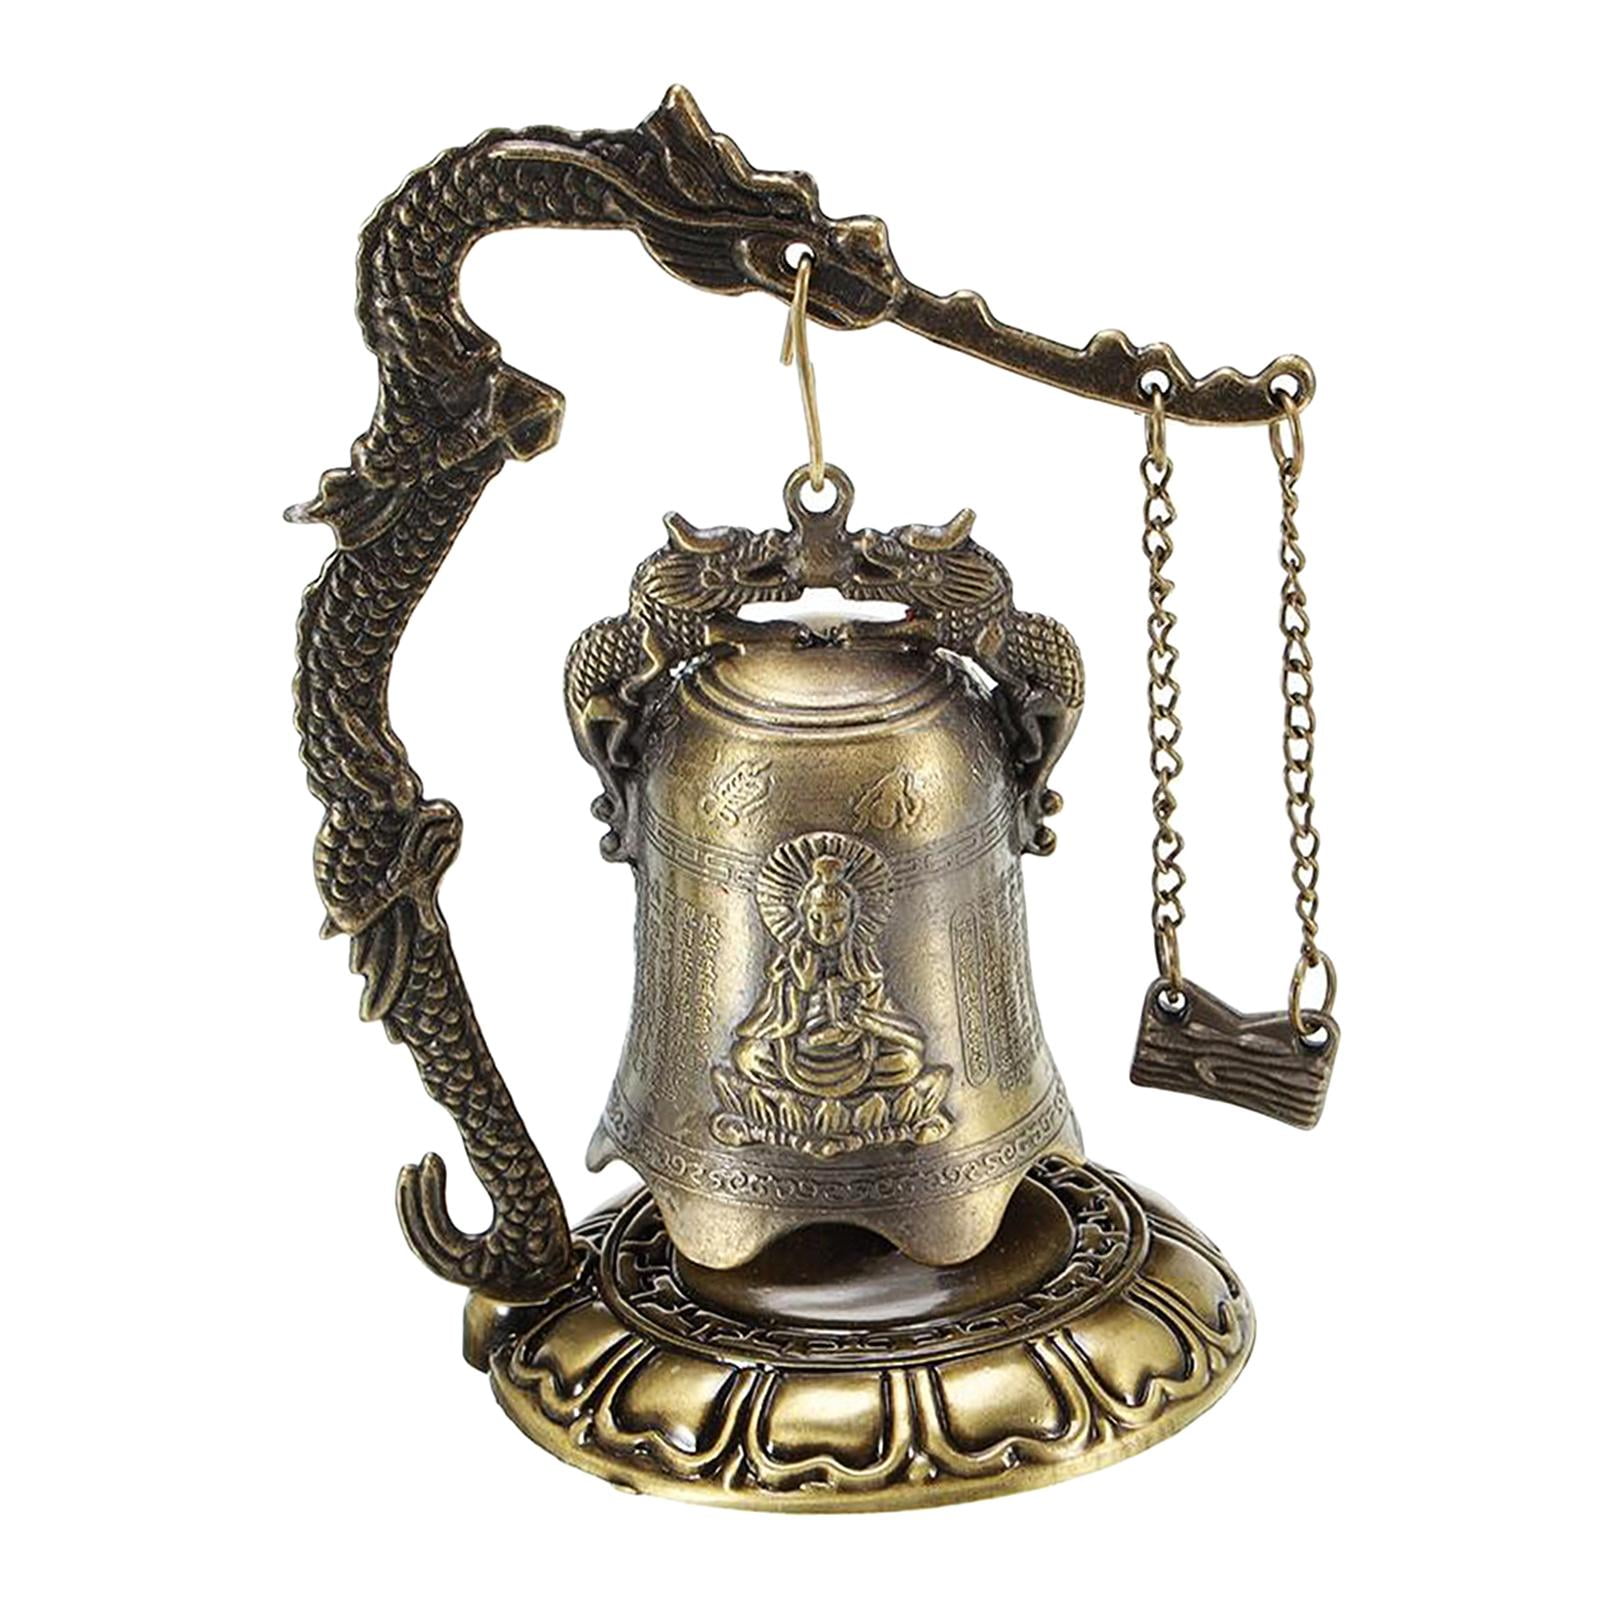 Brass Wall Hanging Buddha Bell Antique Look Buddhism Tibetan bell Home Decor 